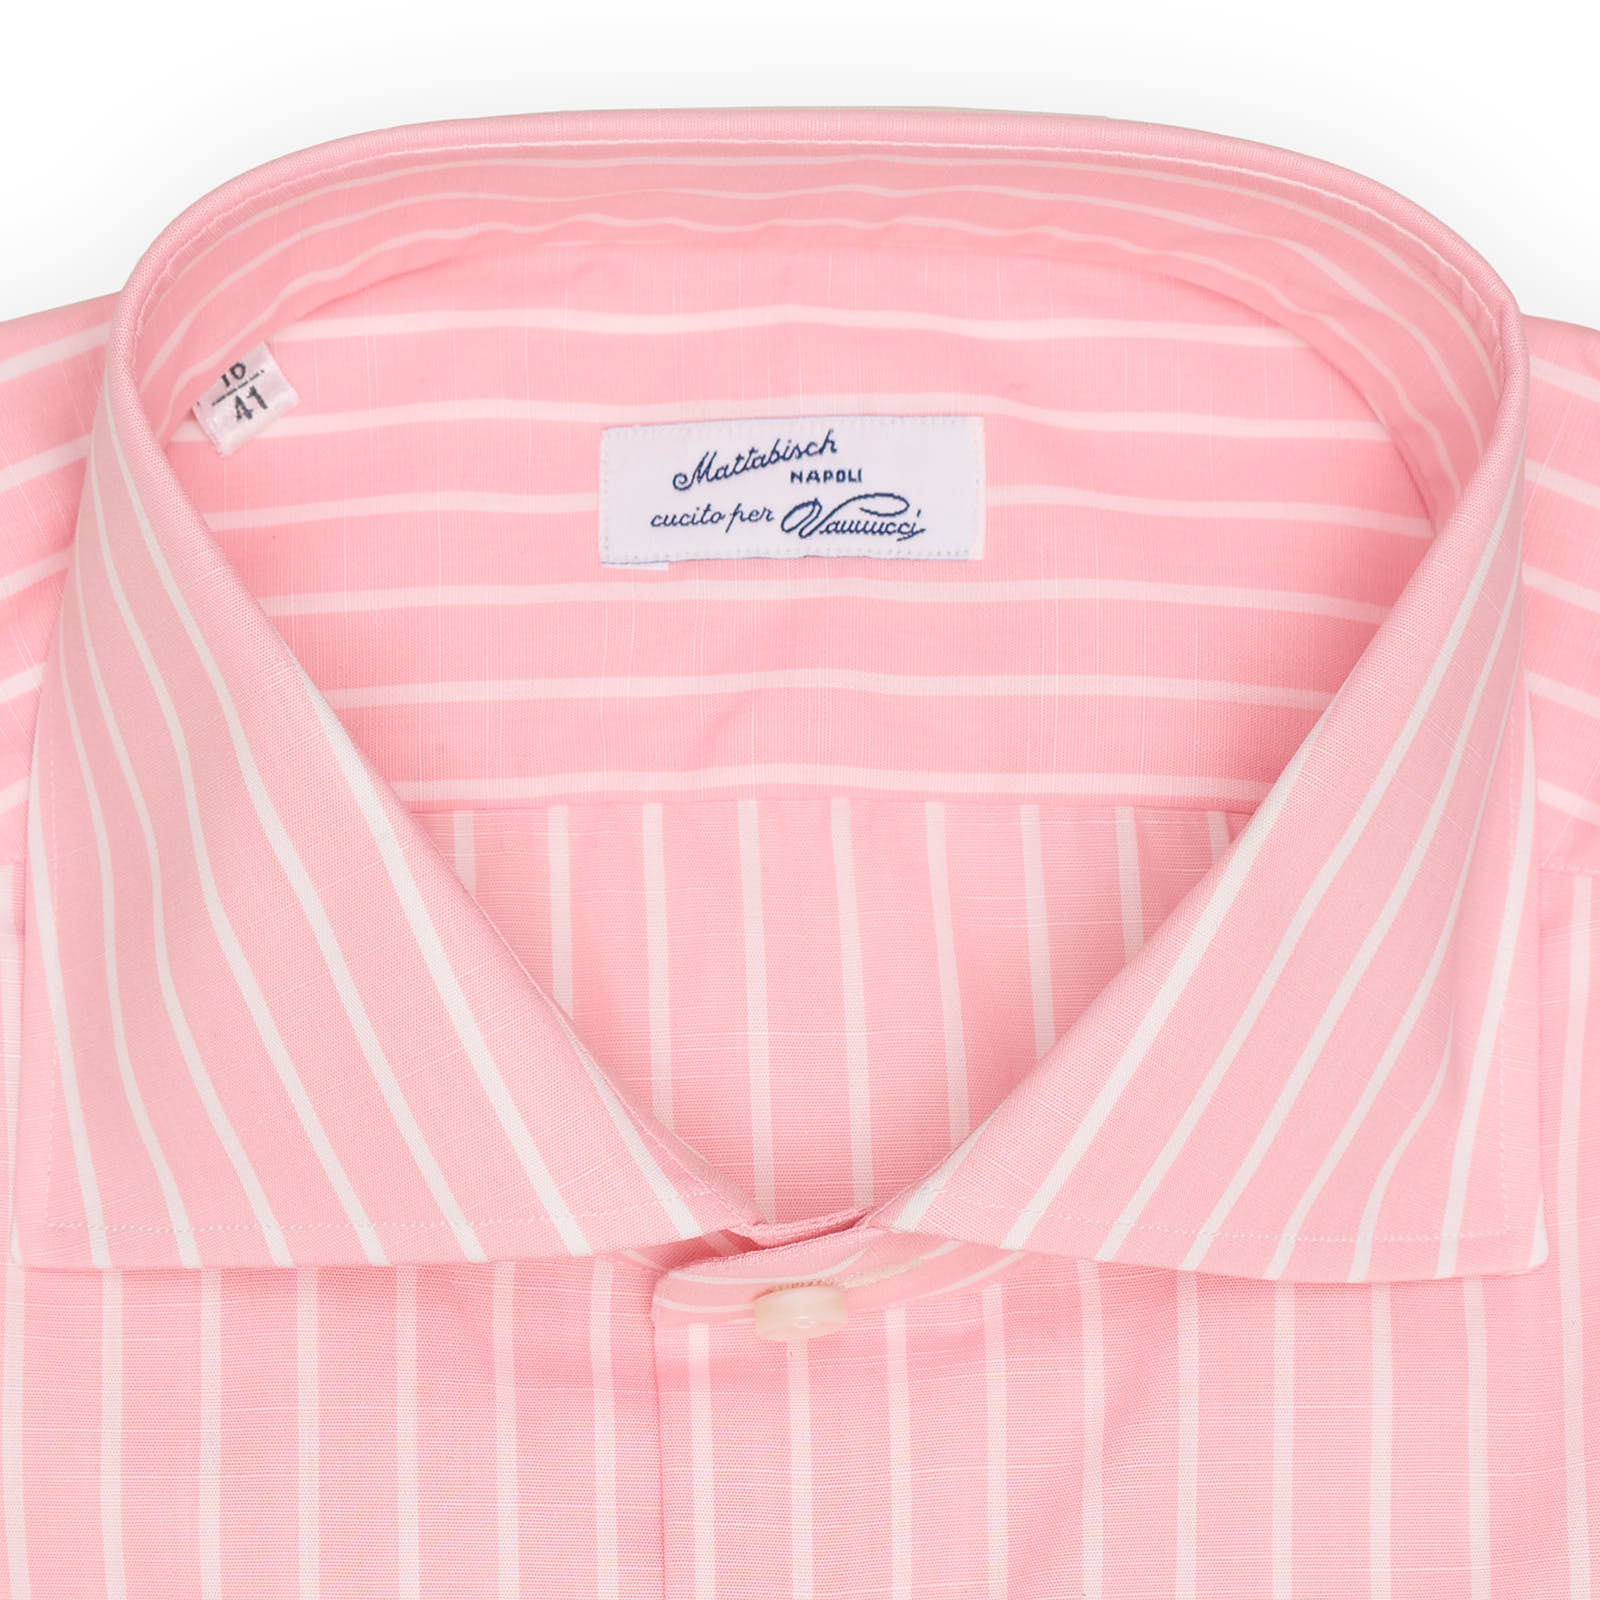 MATTABISCH for VANNUCCI Pink Striped Cotton Dress Shirt EU 41 NEW US 16